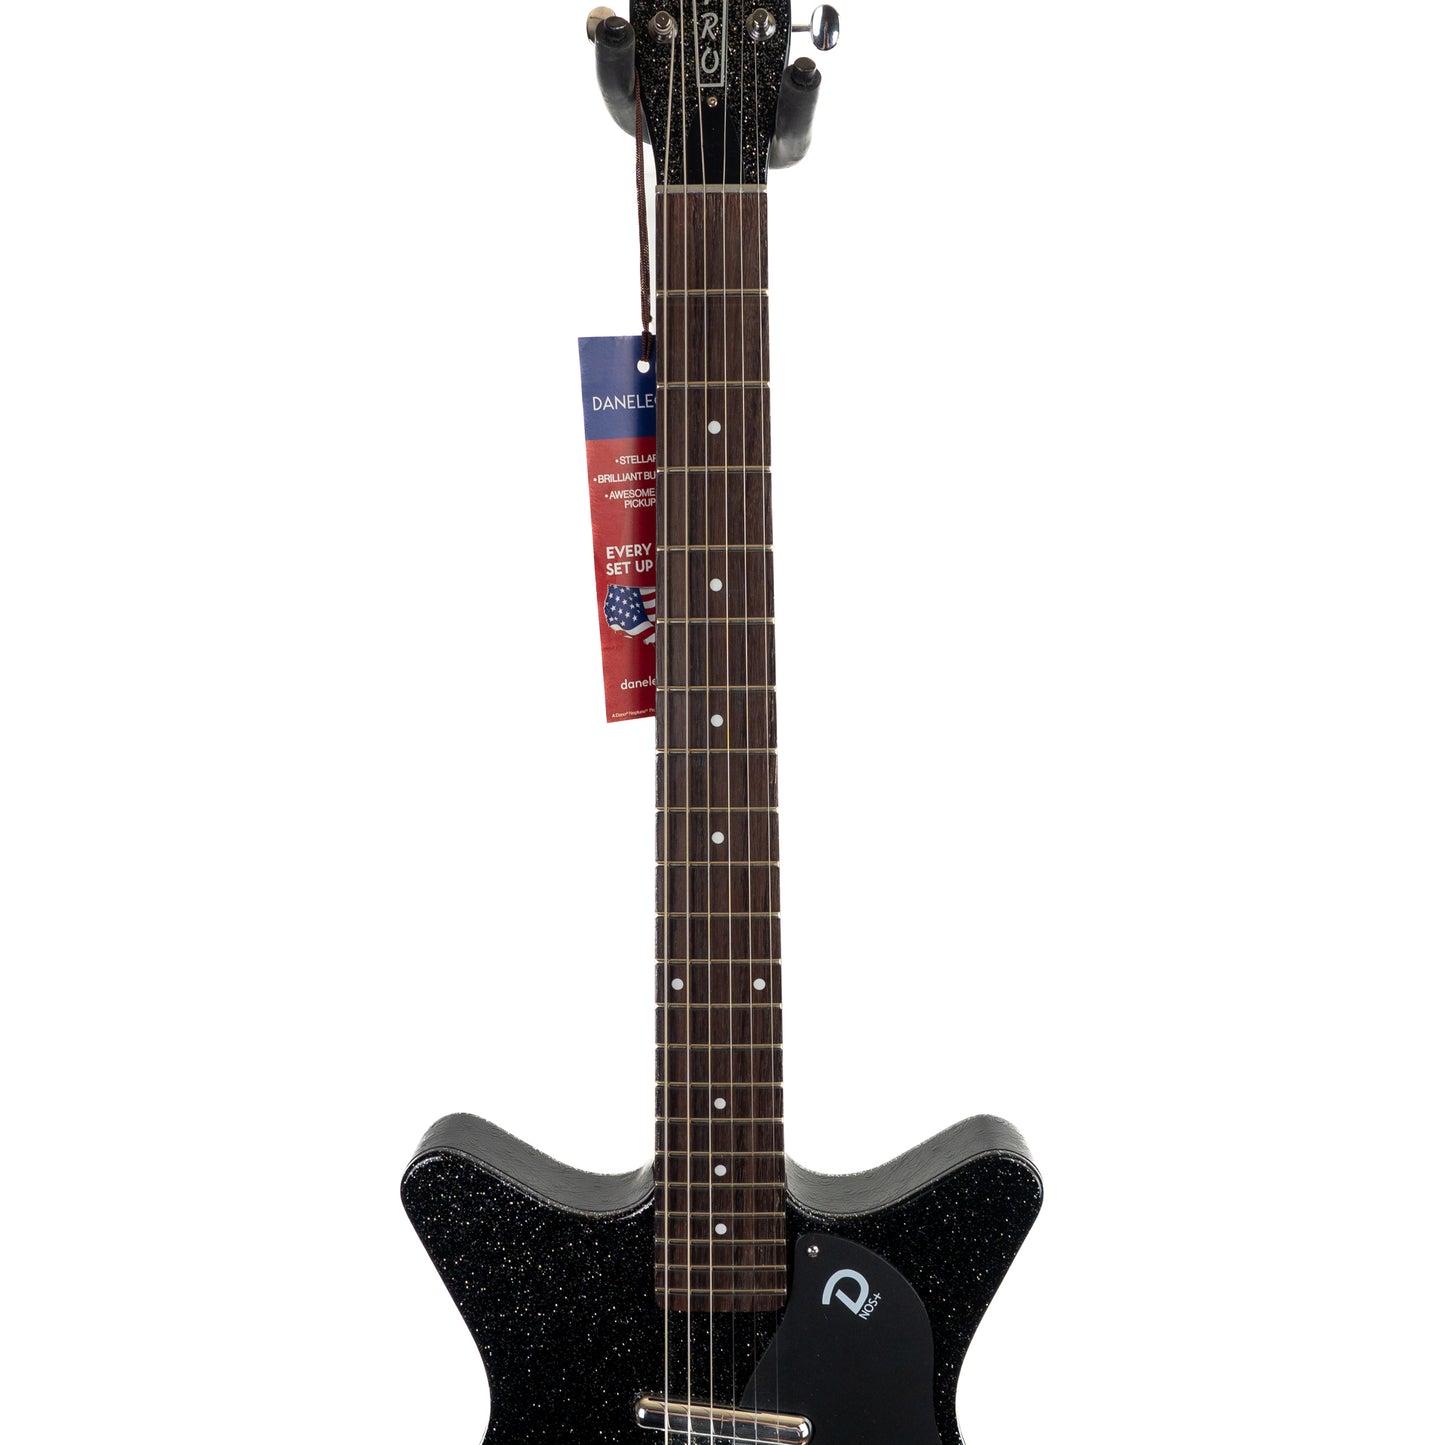 Danelectro Blackout 59 black metal flake ultralight electric guitar 6lbs, 7oz.